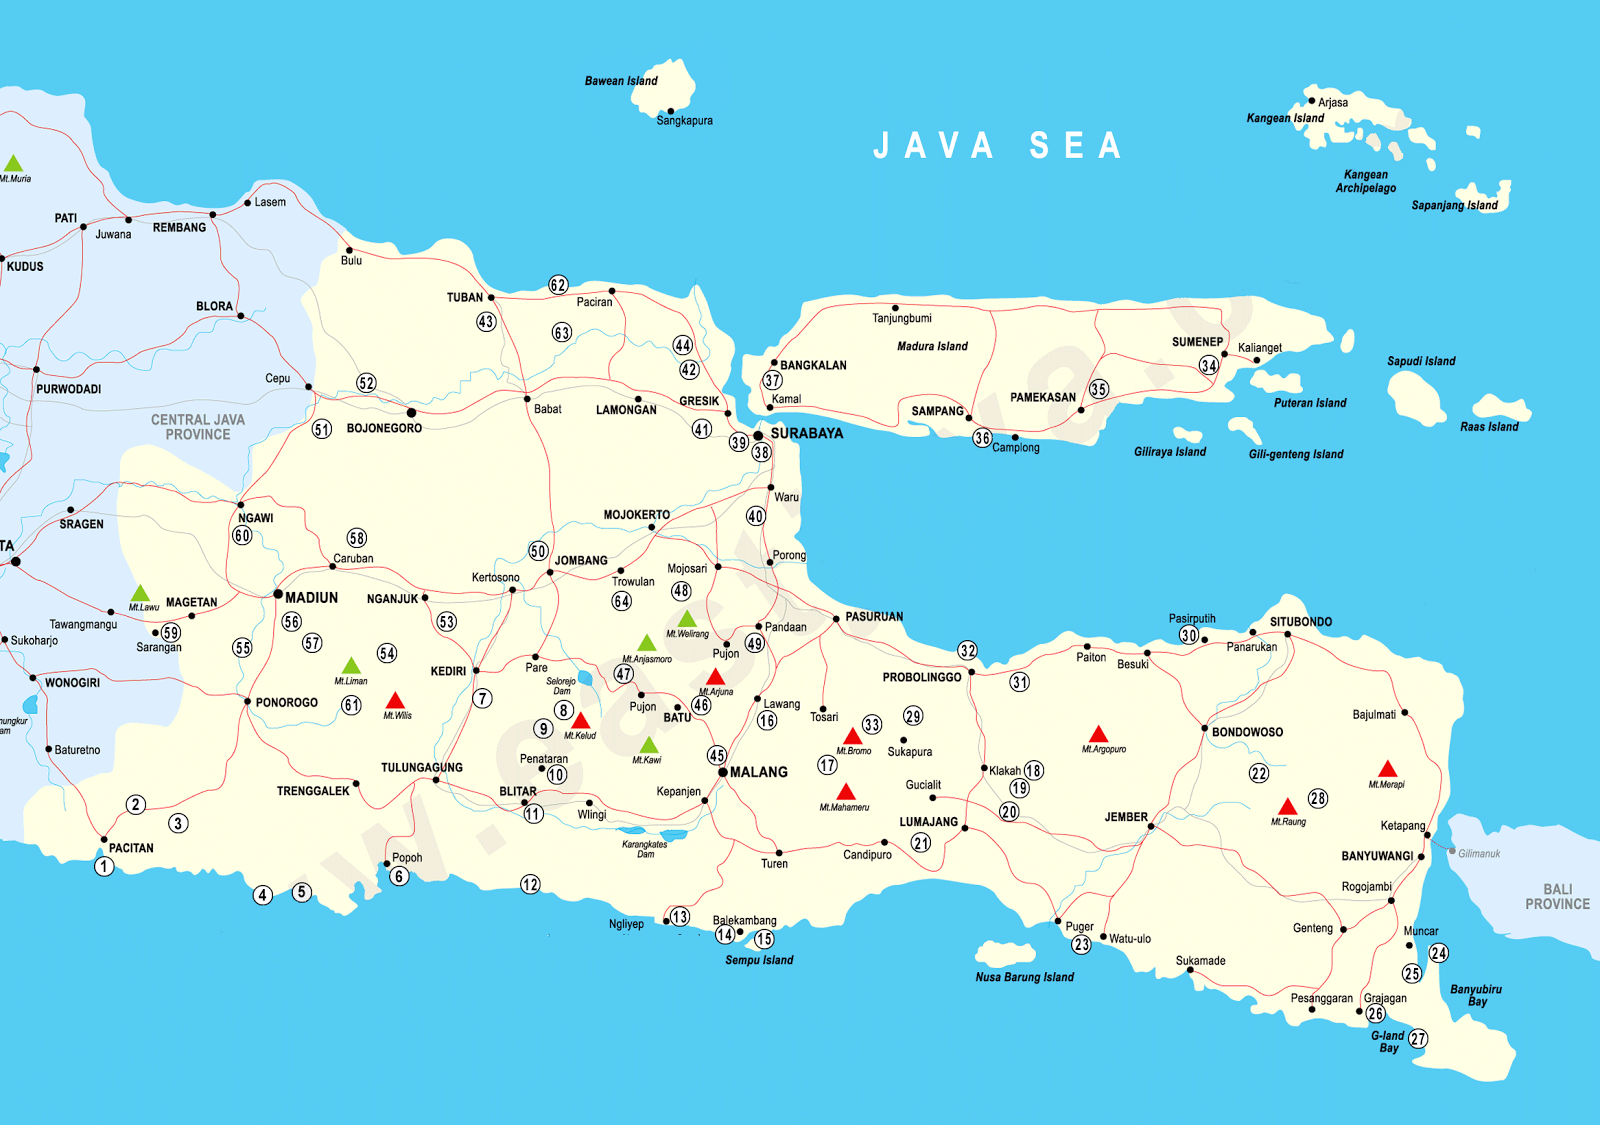 Peta Jawa Timur lengkap HD dengan 29 nama kabupaten dan 9 kota